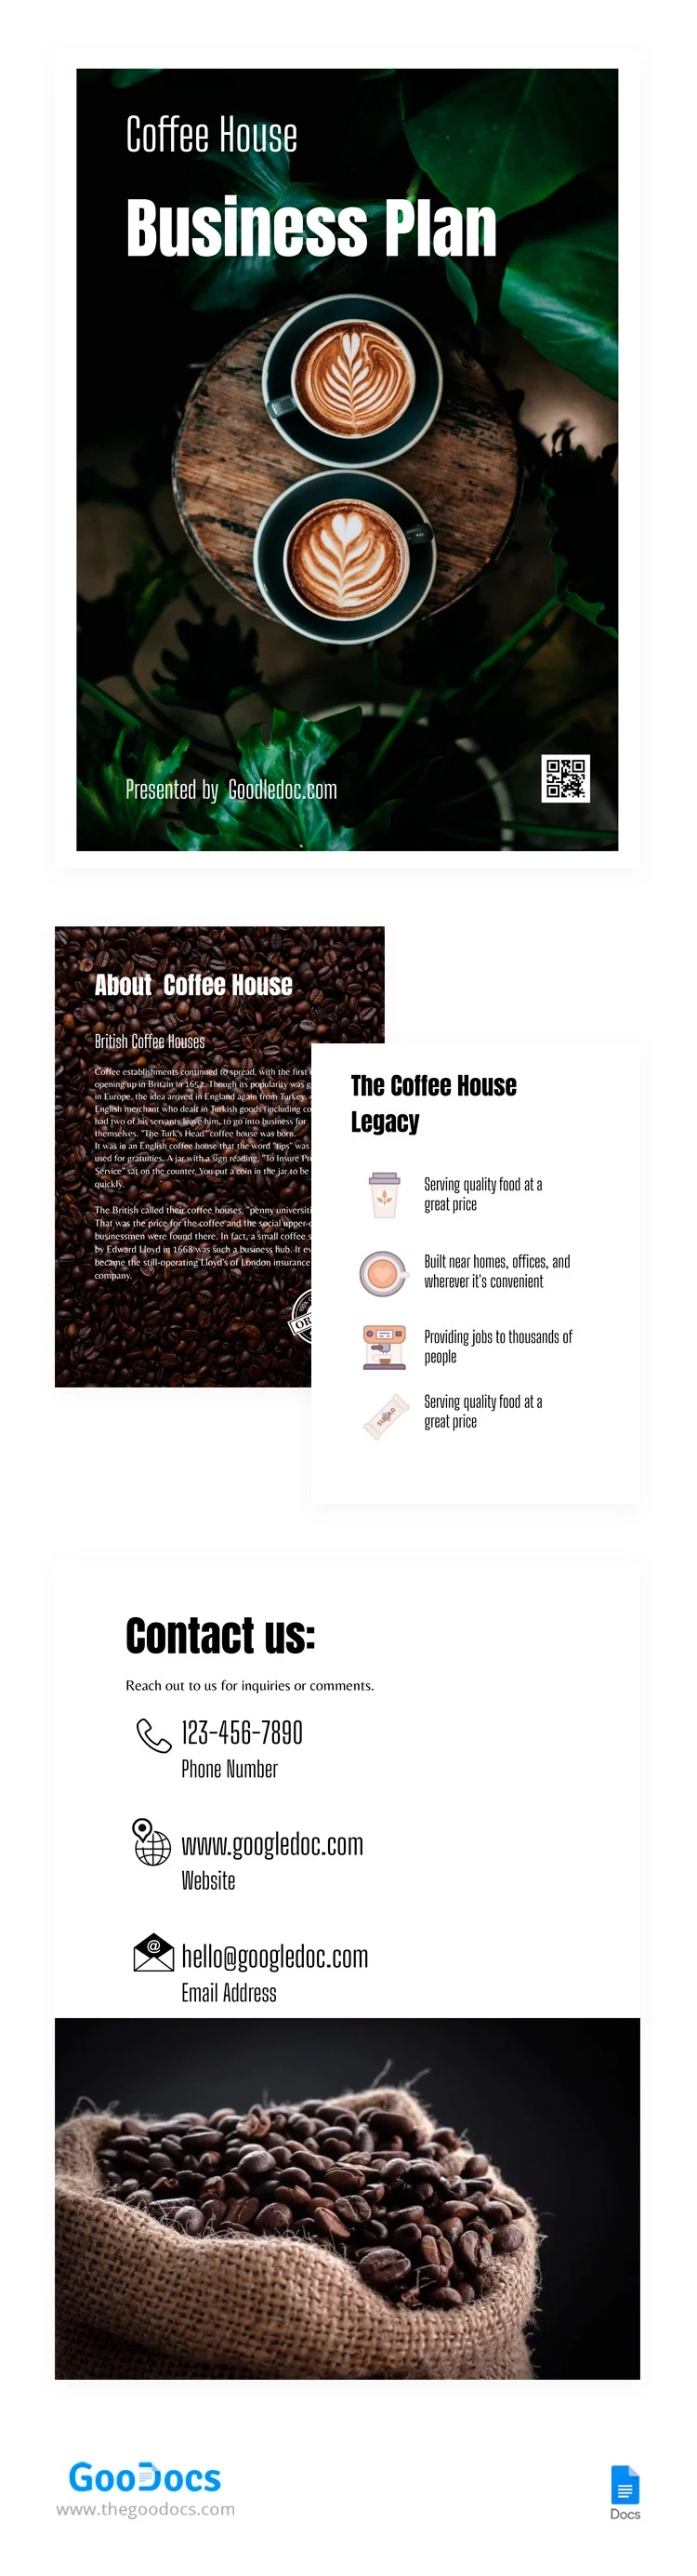 Plan d'affaires de café - free Google Docs Template - 10062909